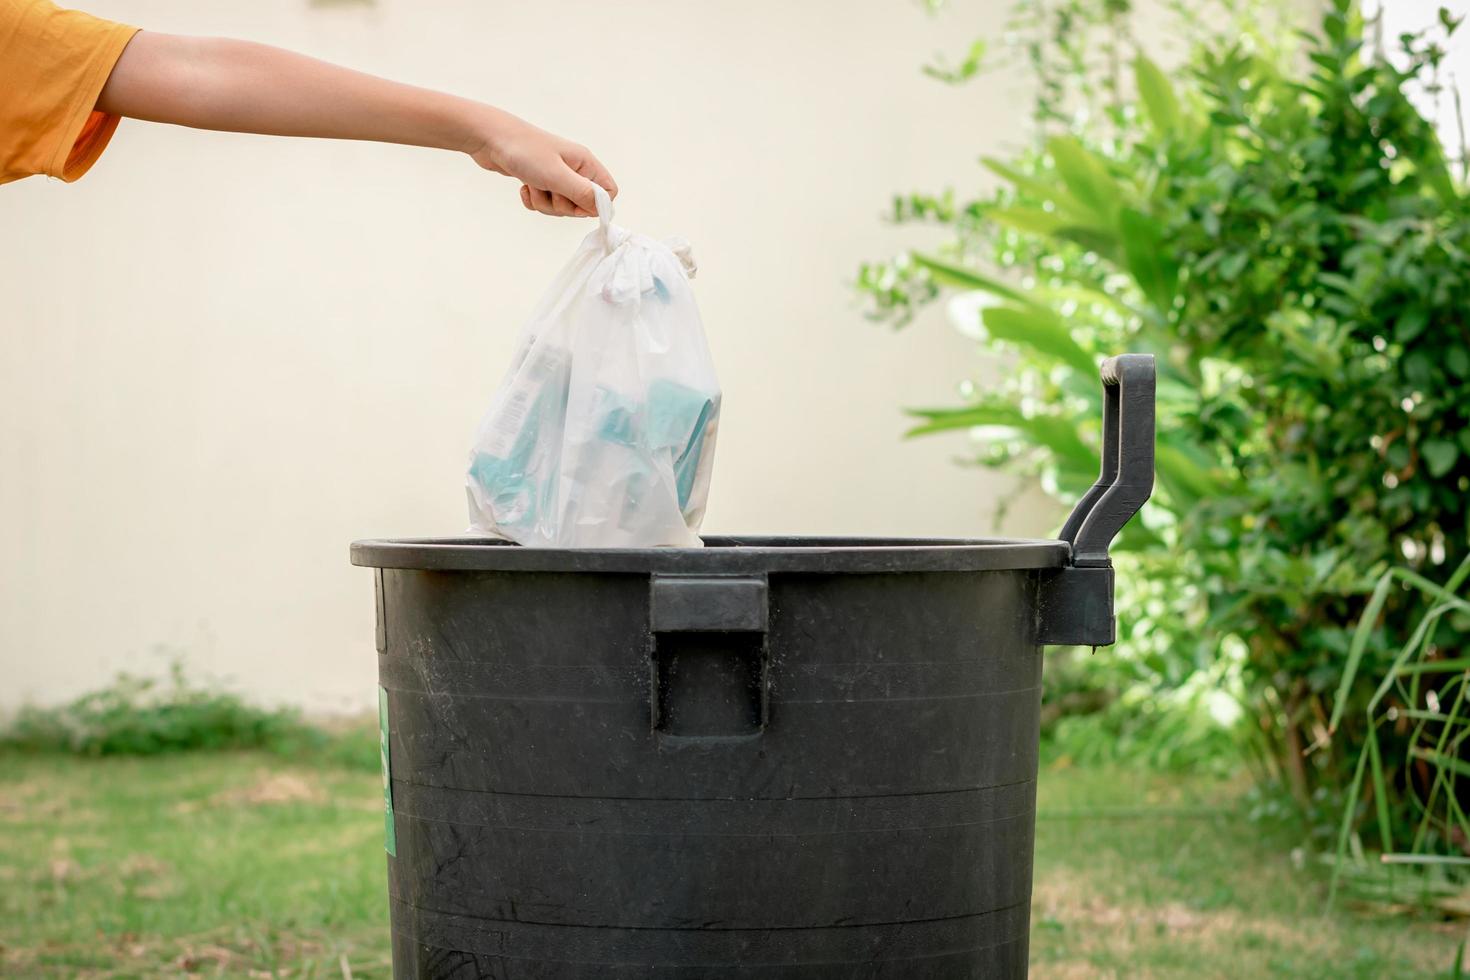 Dubbelzinnigheid Maakte zich klaar Wennen aan gooi afval in plastic zakken in de prullenbak in de tuin. 3164467 Stockfoto